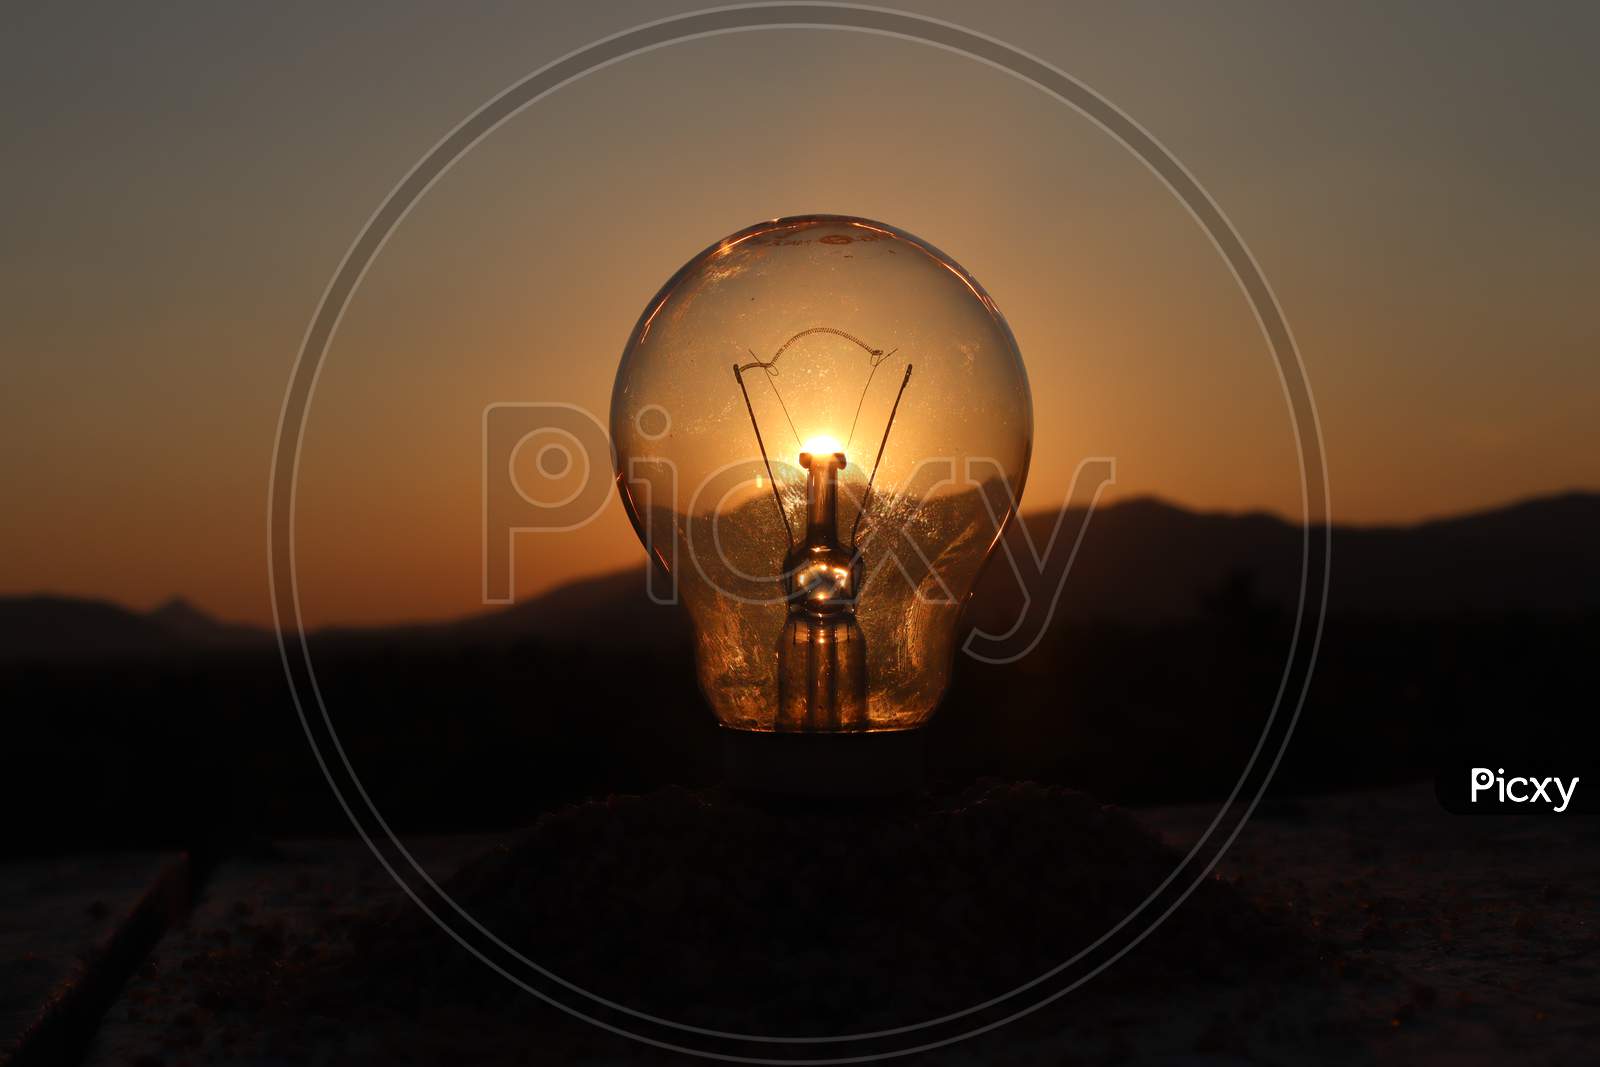 Light up the bulb with sun